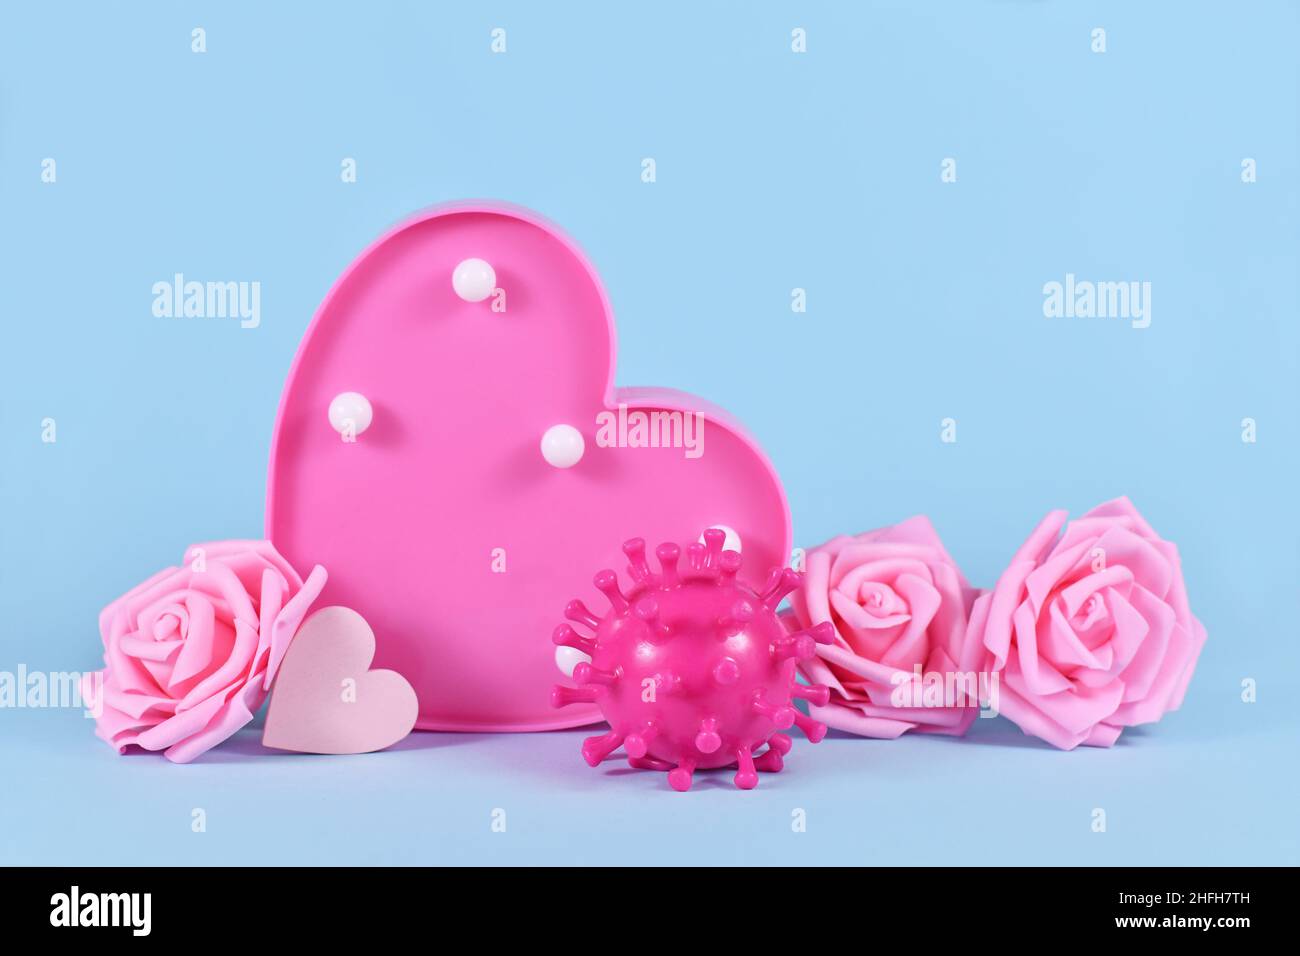 Día de San Valentín durante el concepto de pandemia de Corona con modelo de virus, rosas y corazones sobre fondo azul con espacio de copia Foto de stock